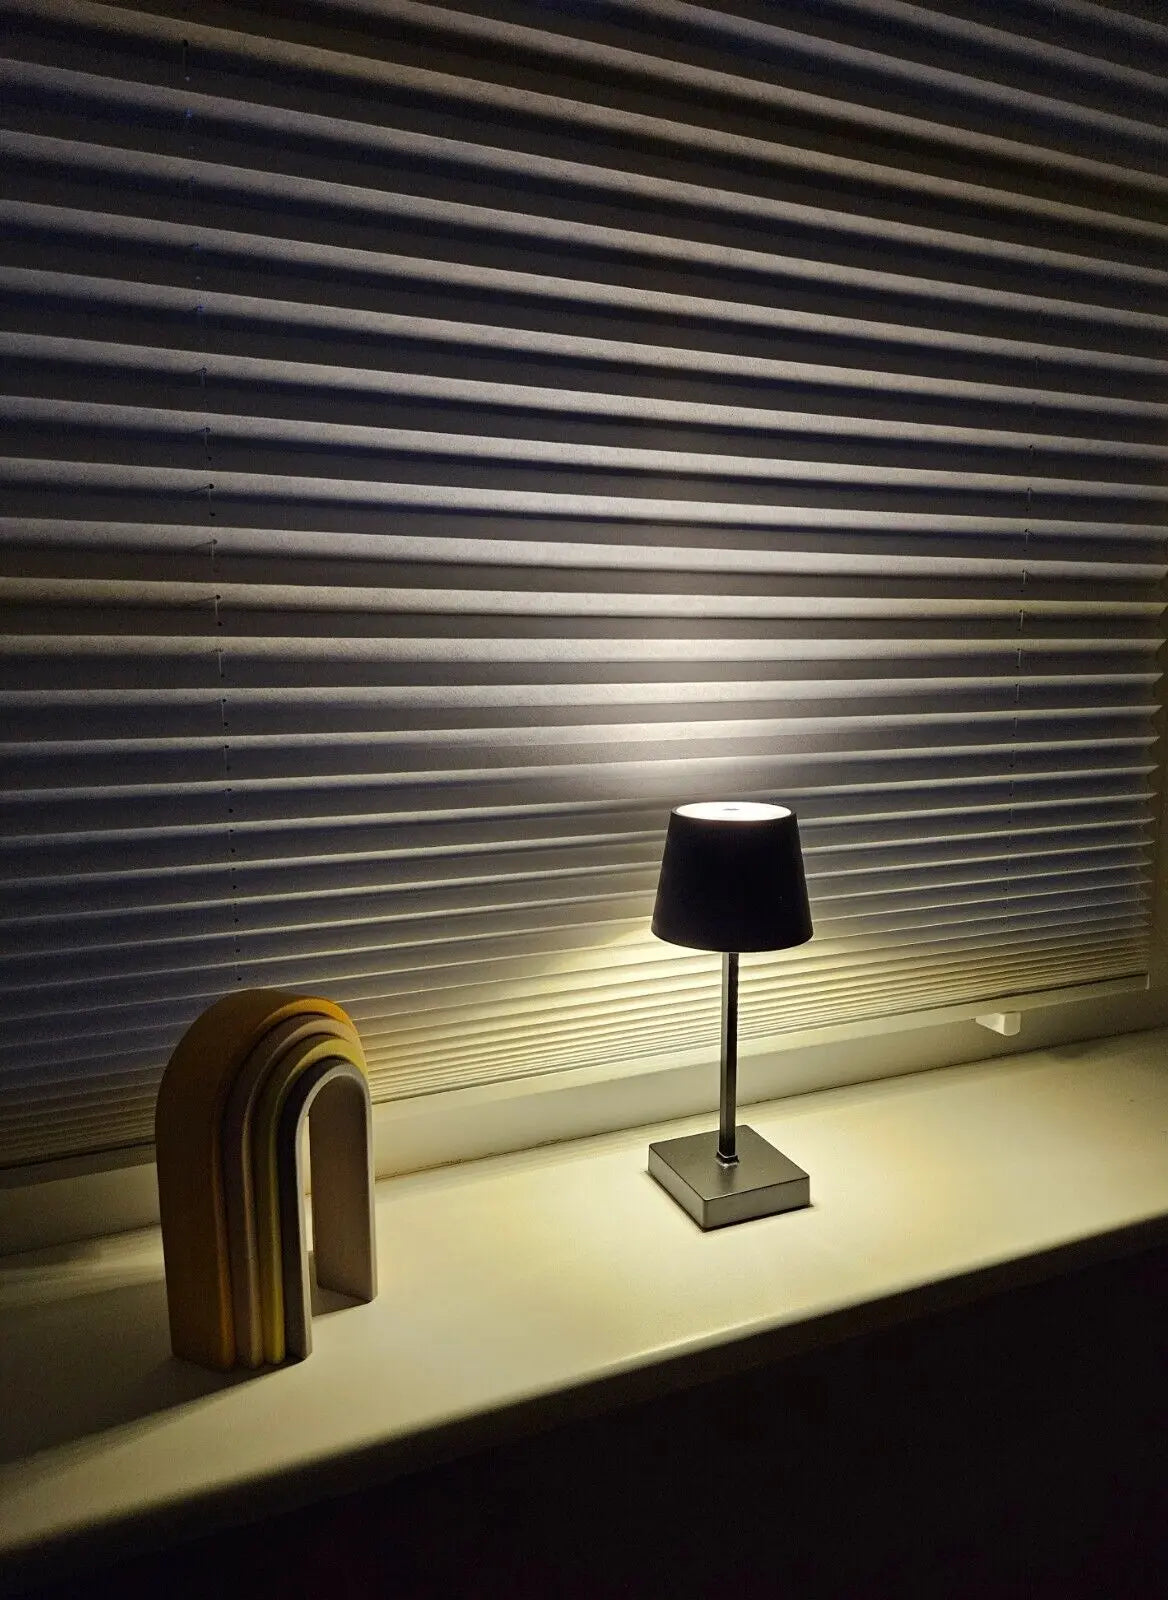 Tischleuchte Touch dimmbar LED Lampe schwarz kabellos Höhe 26 cm